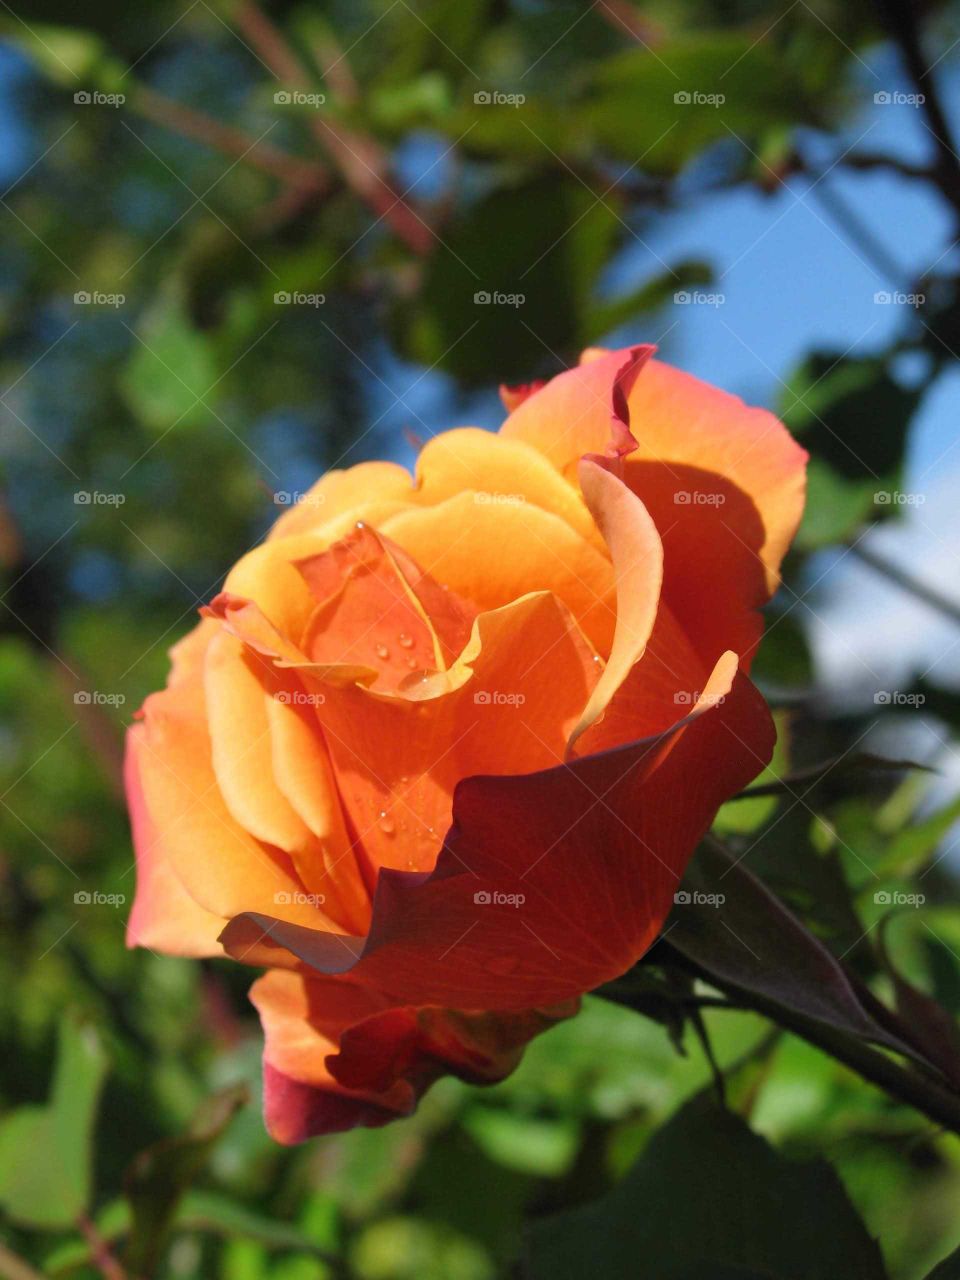 Orange yellow rose